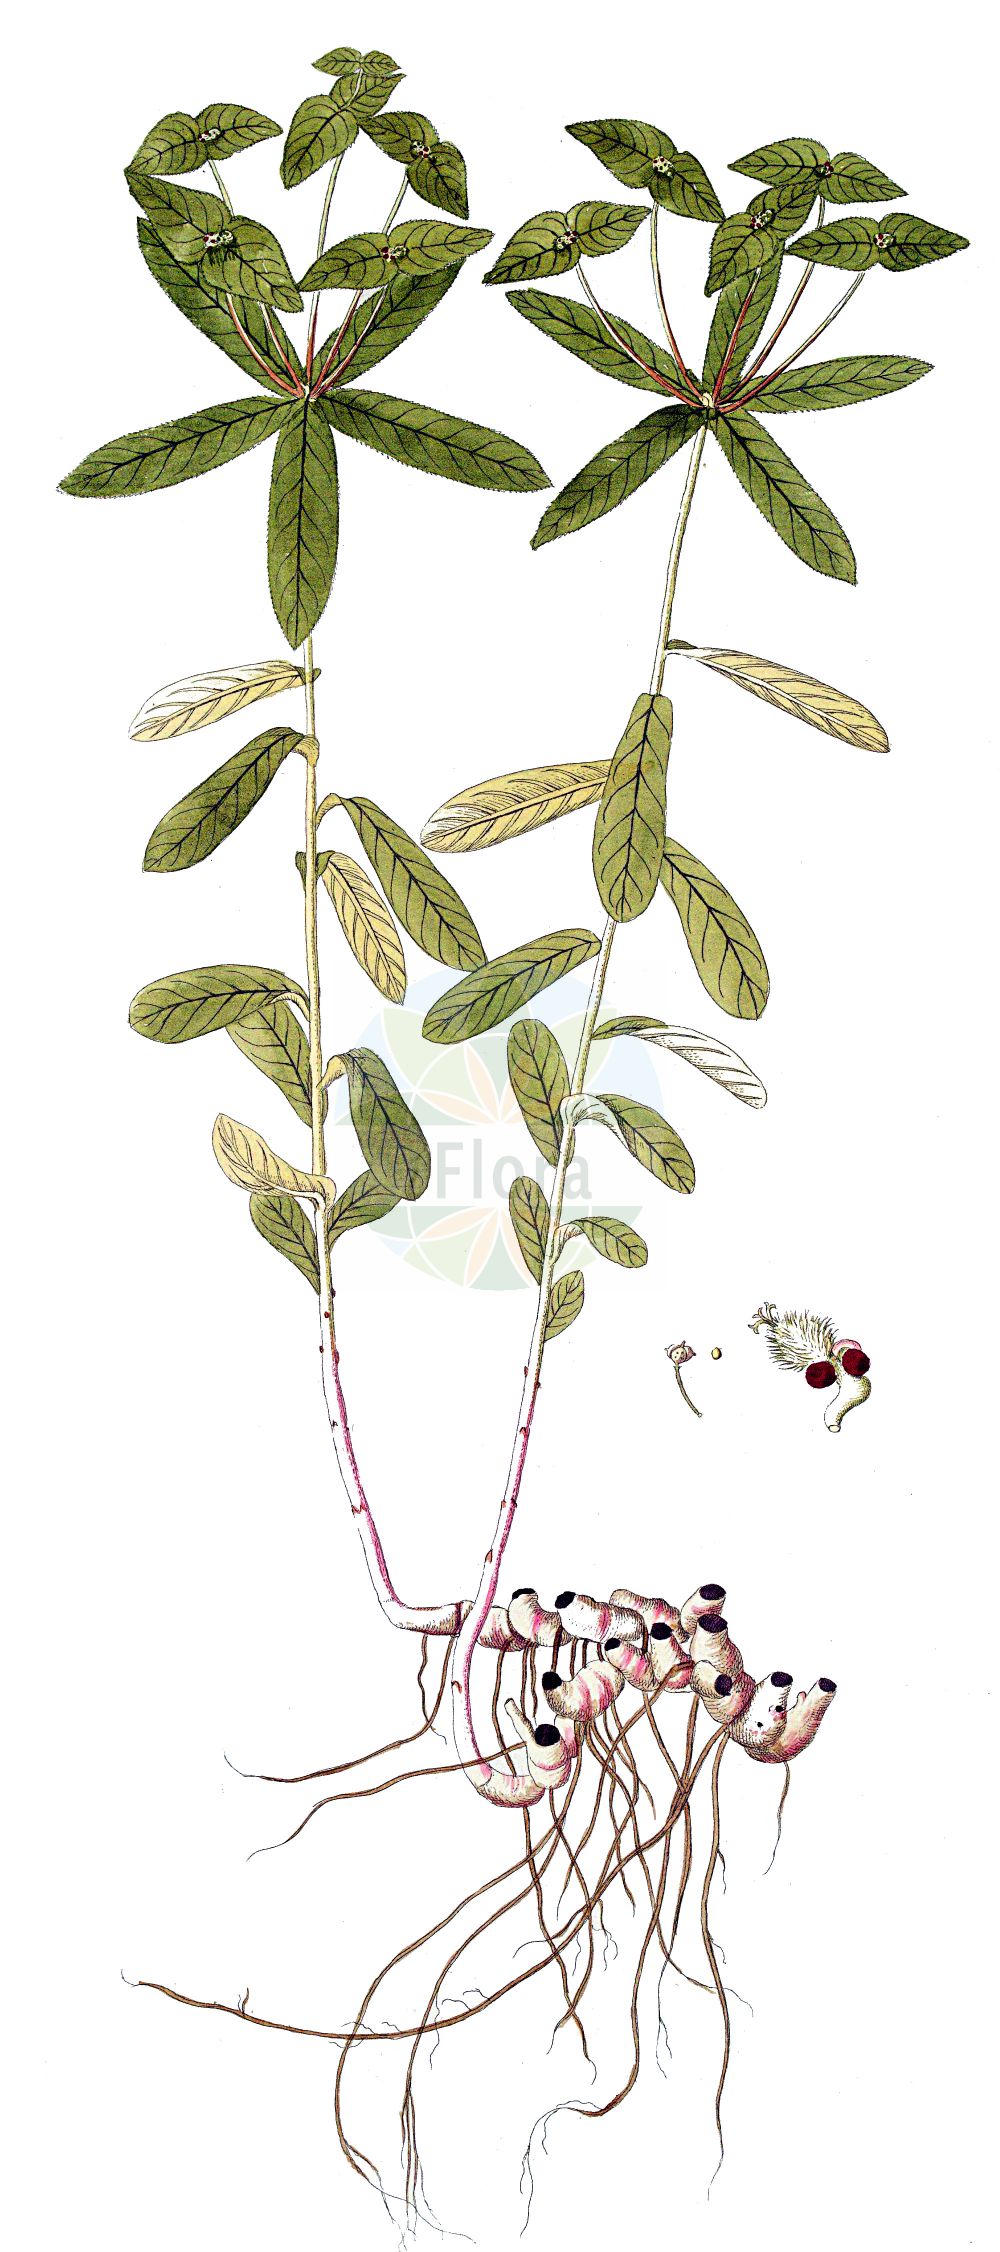 Historische Abbildung von Euphorbia dulcis (Süße Wolfsmilch - Sweet Spurge). Das Bild zeigt Blatt, Bluete, Frucht und Same. ---- Historical Drawing of Euphorbia dulcis (Süße Wolfsmilch - Sweet Spurge). The image is showing leaf, flower, fruit and seed.(Euphorbia dulcis,Süße Wolfsmilch,Sweet Spurge,Euphorbia dulcis,Galarhoeus dulcis,Pythius dulcis,Suesse Wolfsmilch,Haarfruechtige Suesse Wolfsmilch,Kahlfruechtige Suesse Wolfsmilch,Sweet Spurge,Euphorbia,Wolfsmilch,Spurge,Euphorbiaceae,Wolfsmilchgewächse,Spurge family,Blatt,Bluete,Frucht,Same,leaf,flower,fruit,seed)